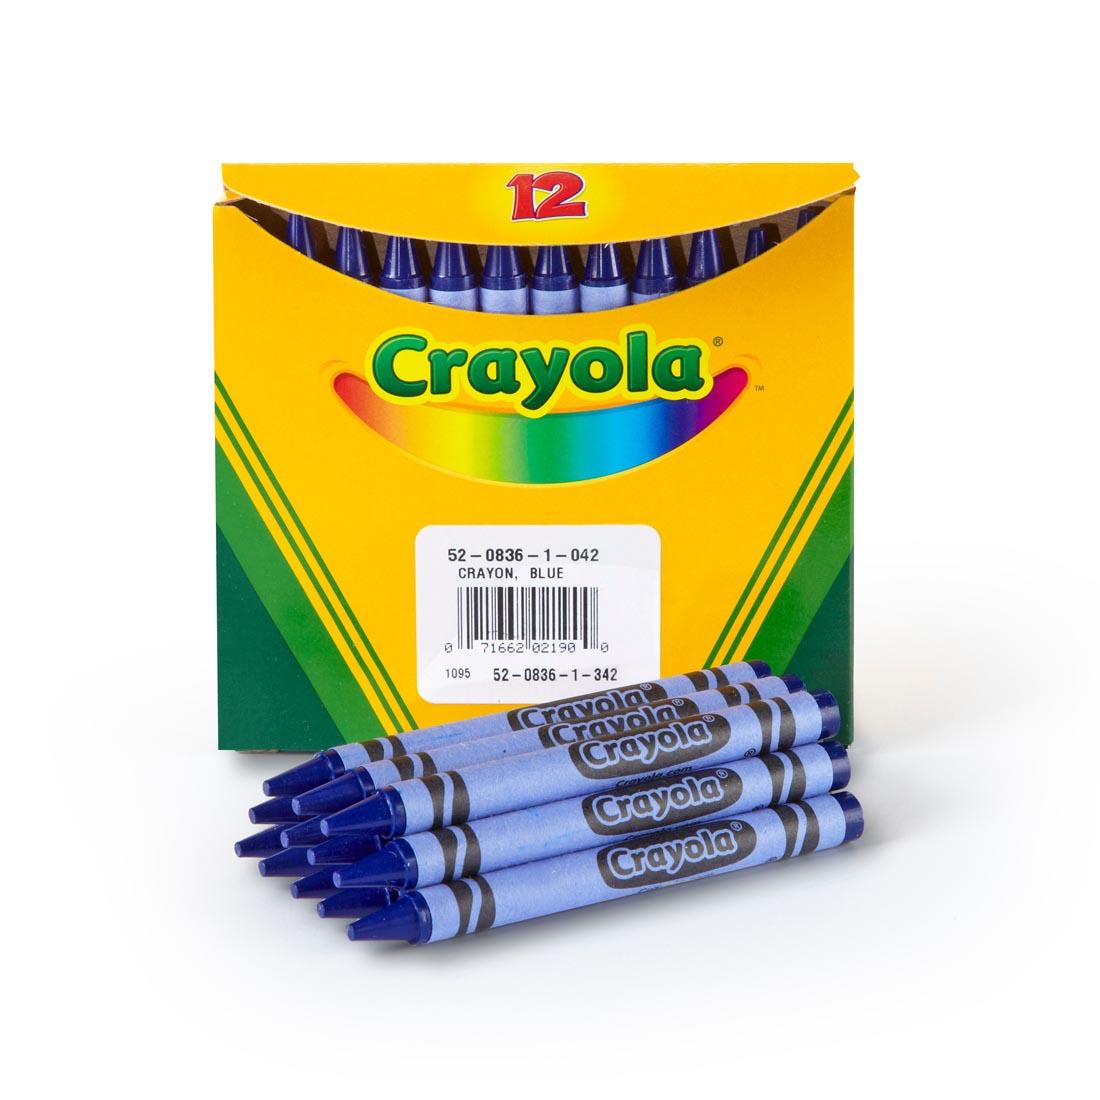 Box of Crayola Regular Crayon Refills with 12 Blue Crayons